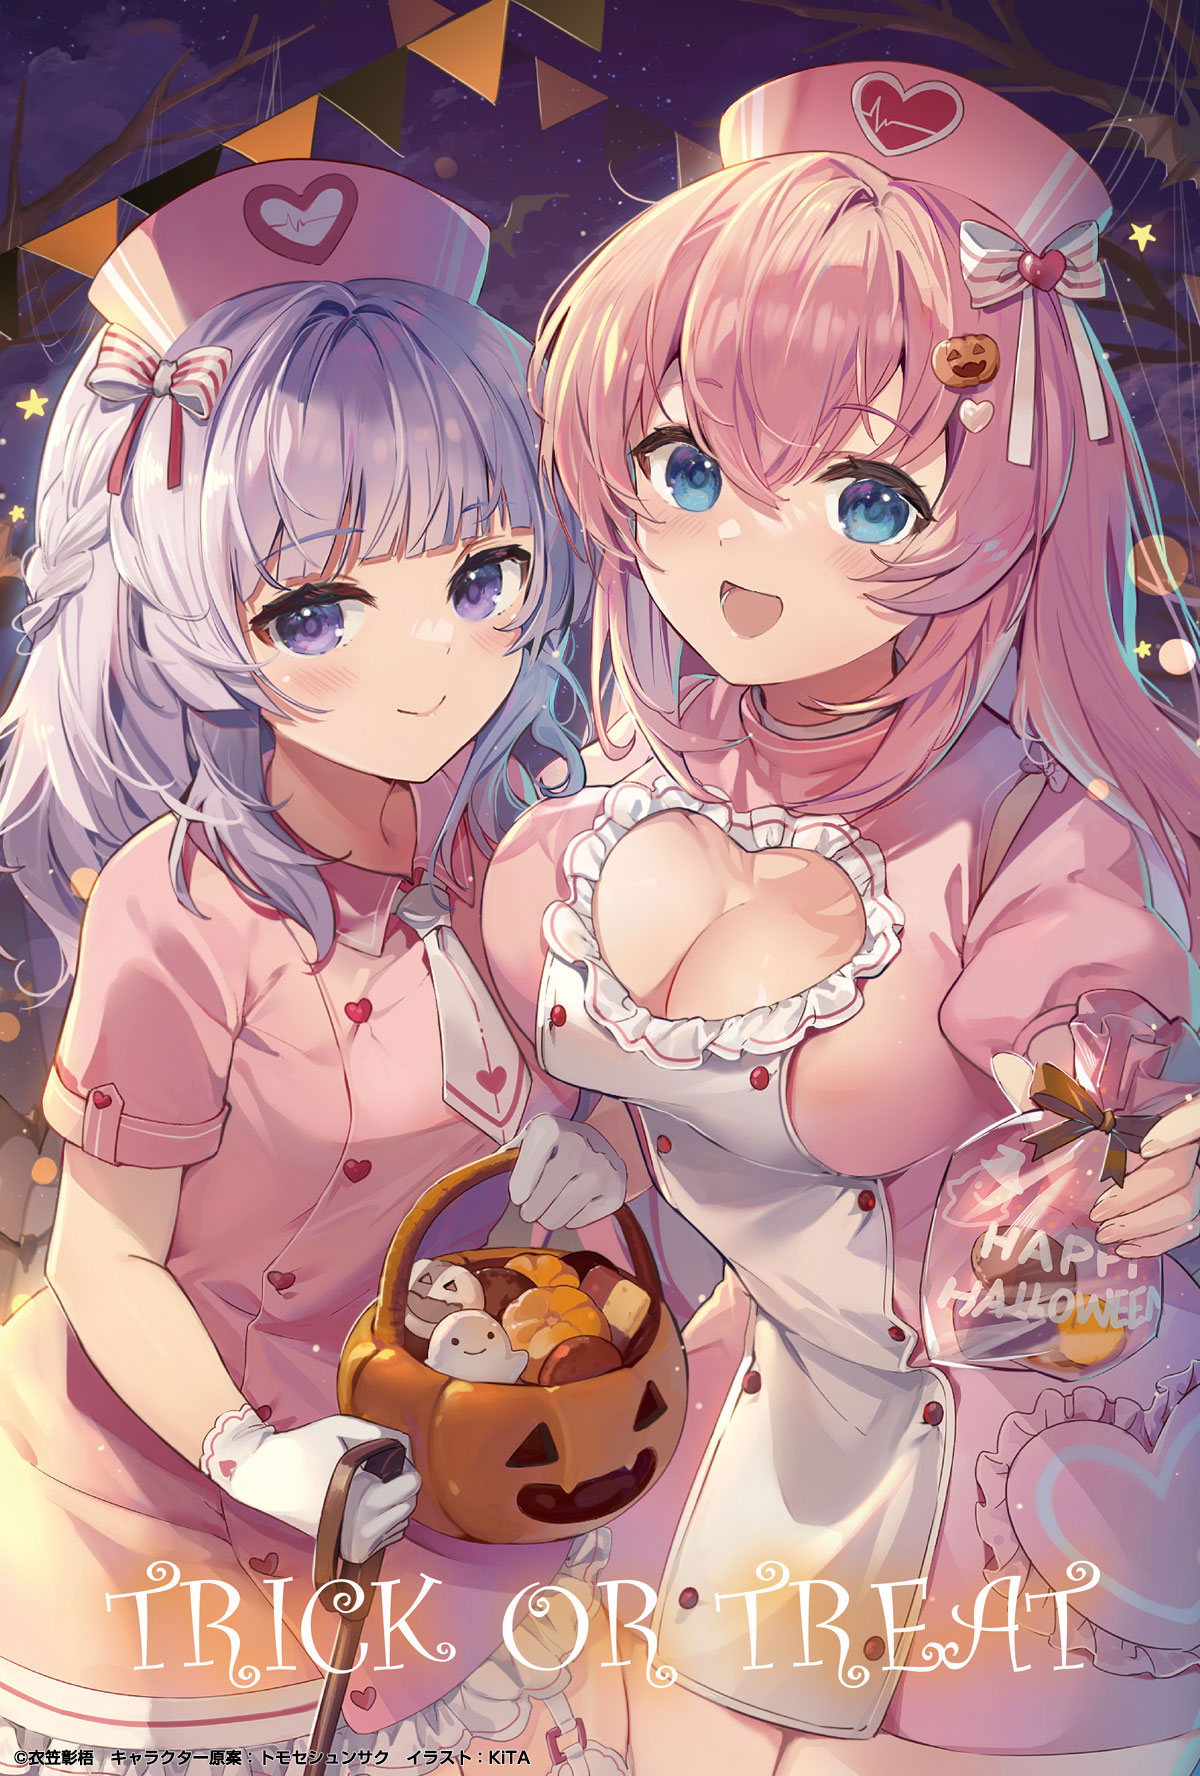 chèn hình ảnh của sakayanagi và ichinose từ lớp học ưu tú áp phích quảng cáo trò lừa hoặc chiêu đãi halloween